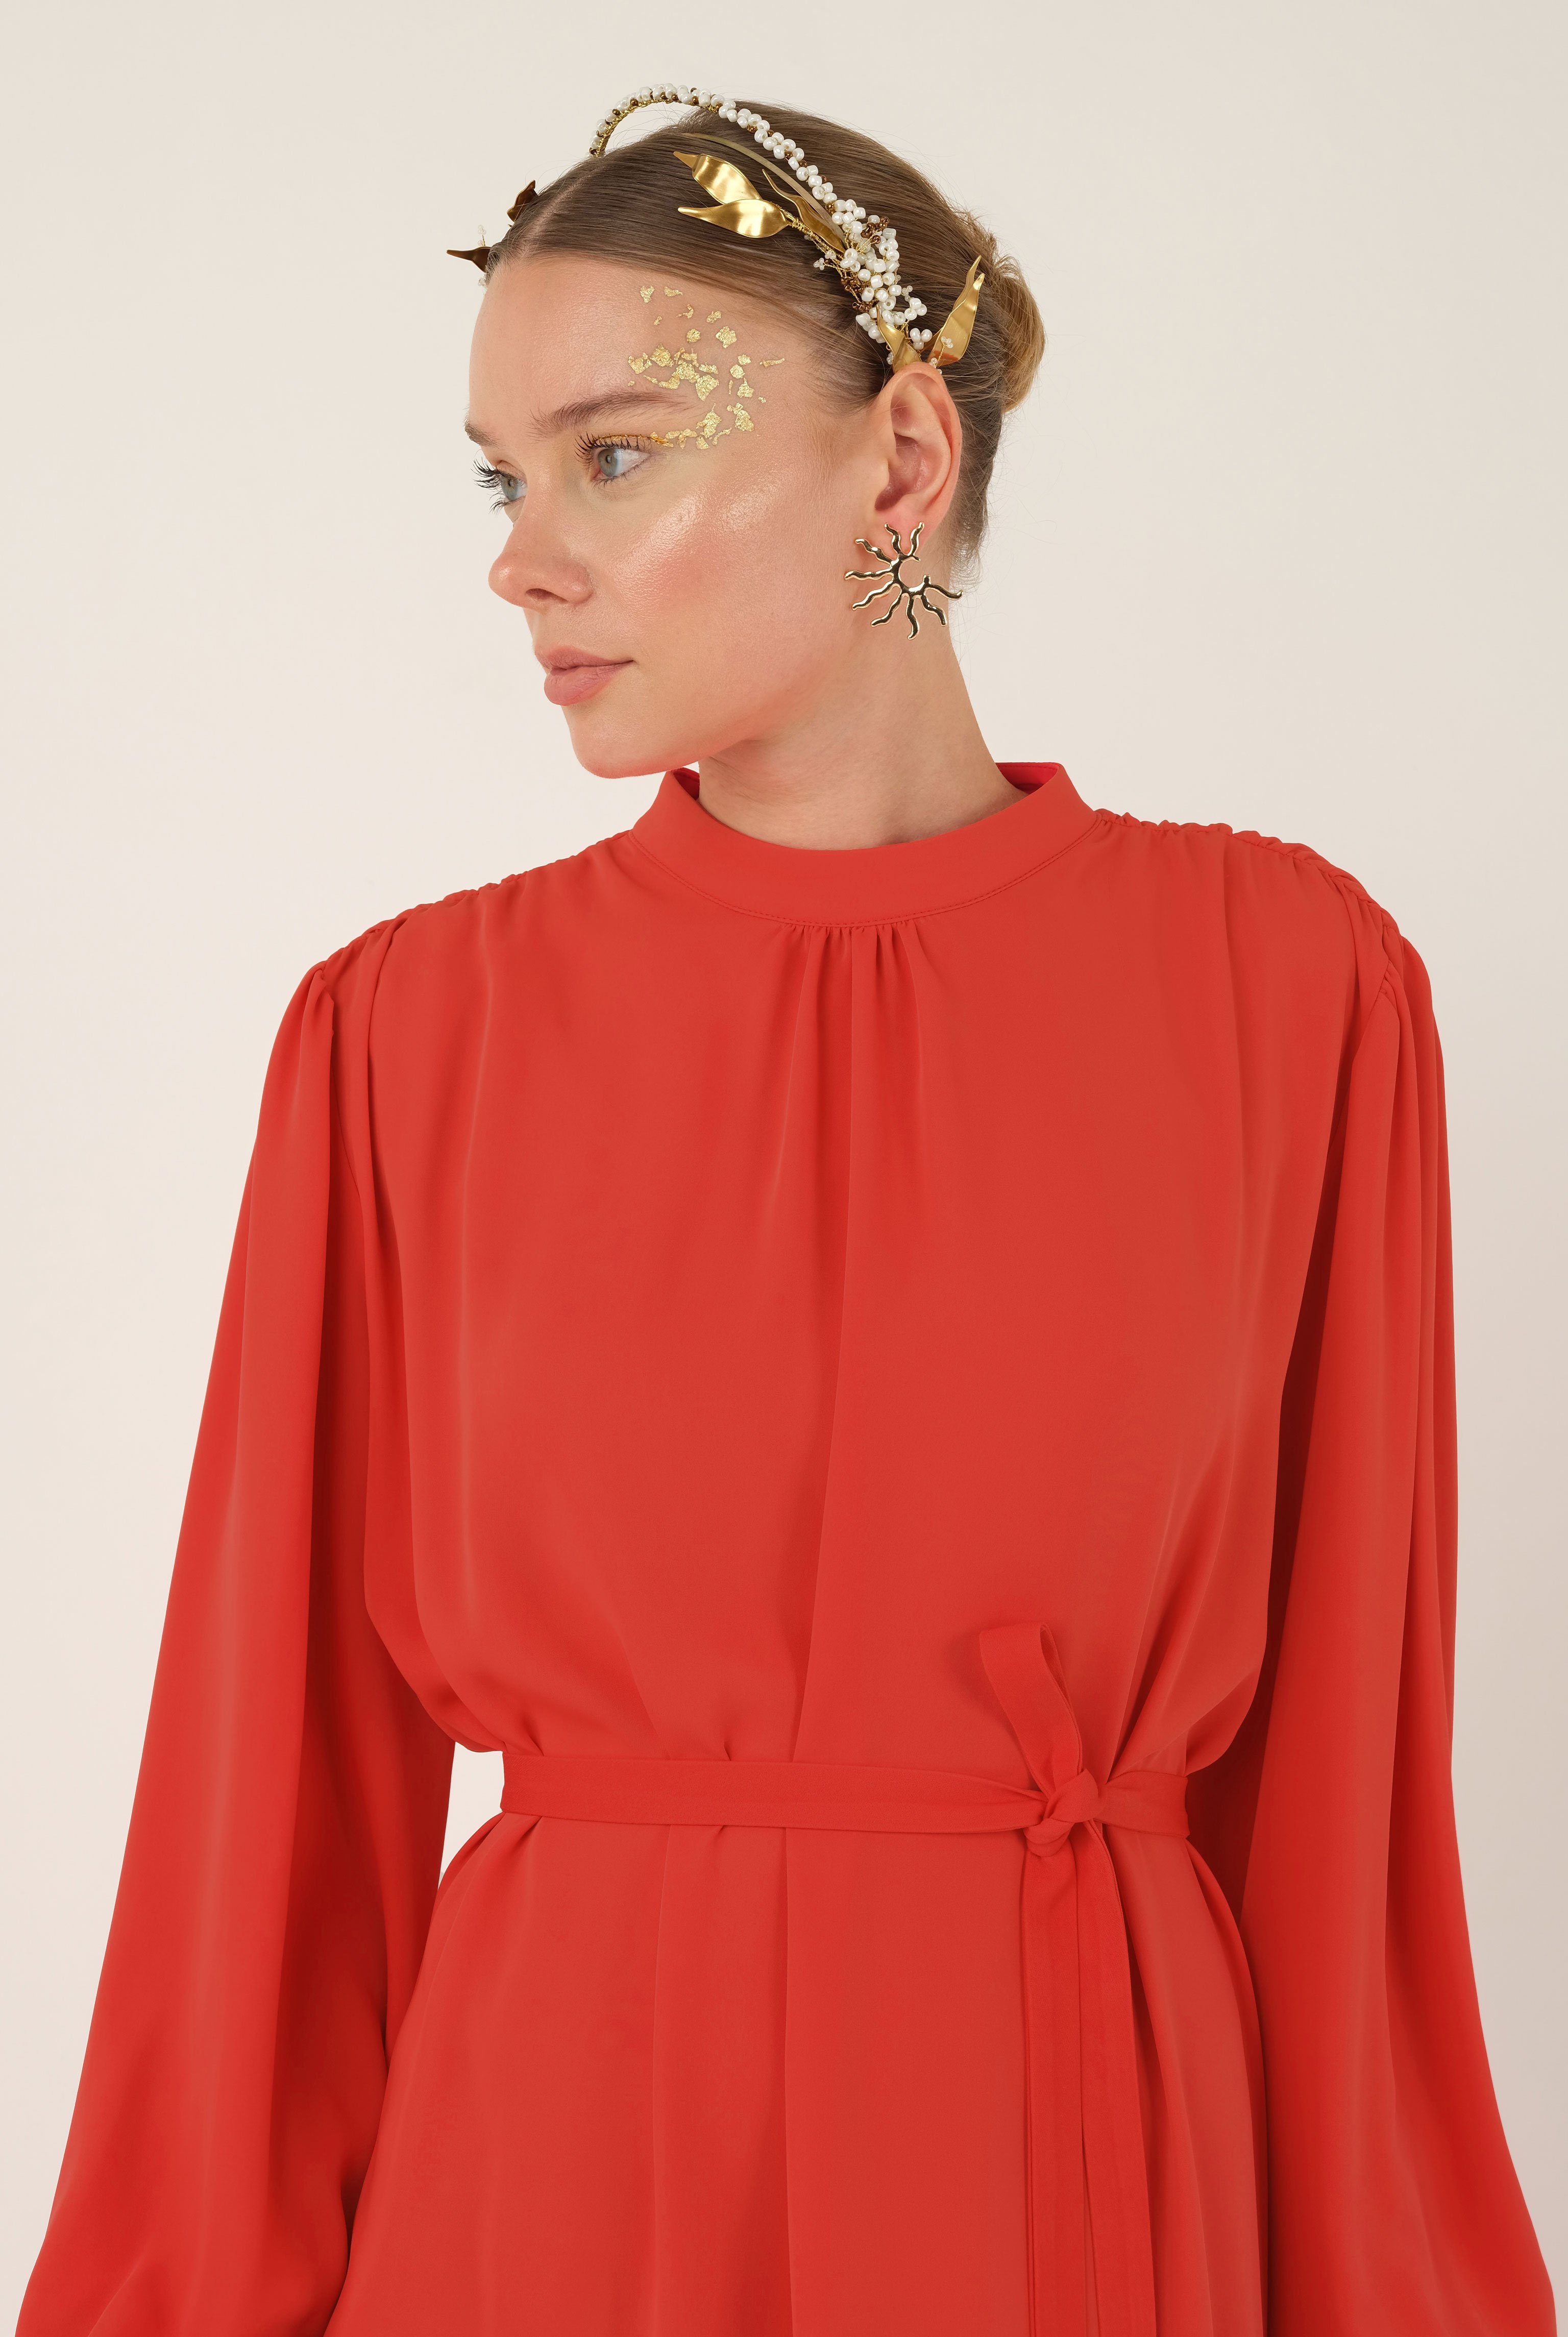 Shirred Collared Dress Garnet